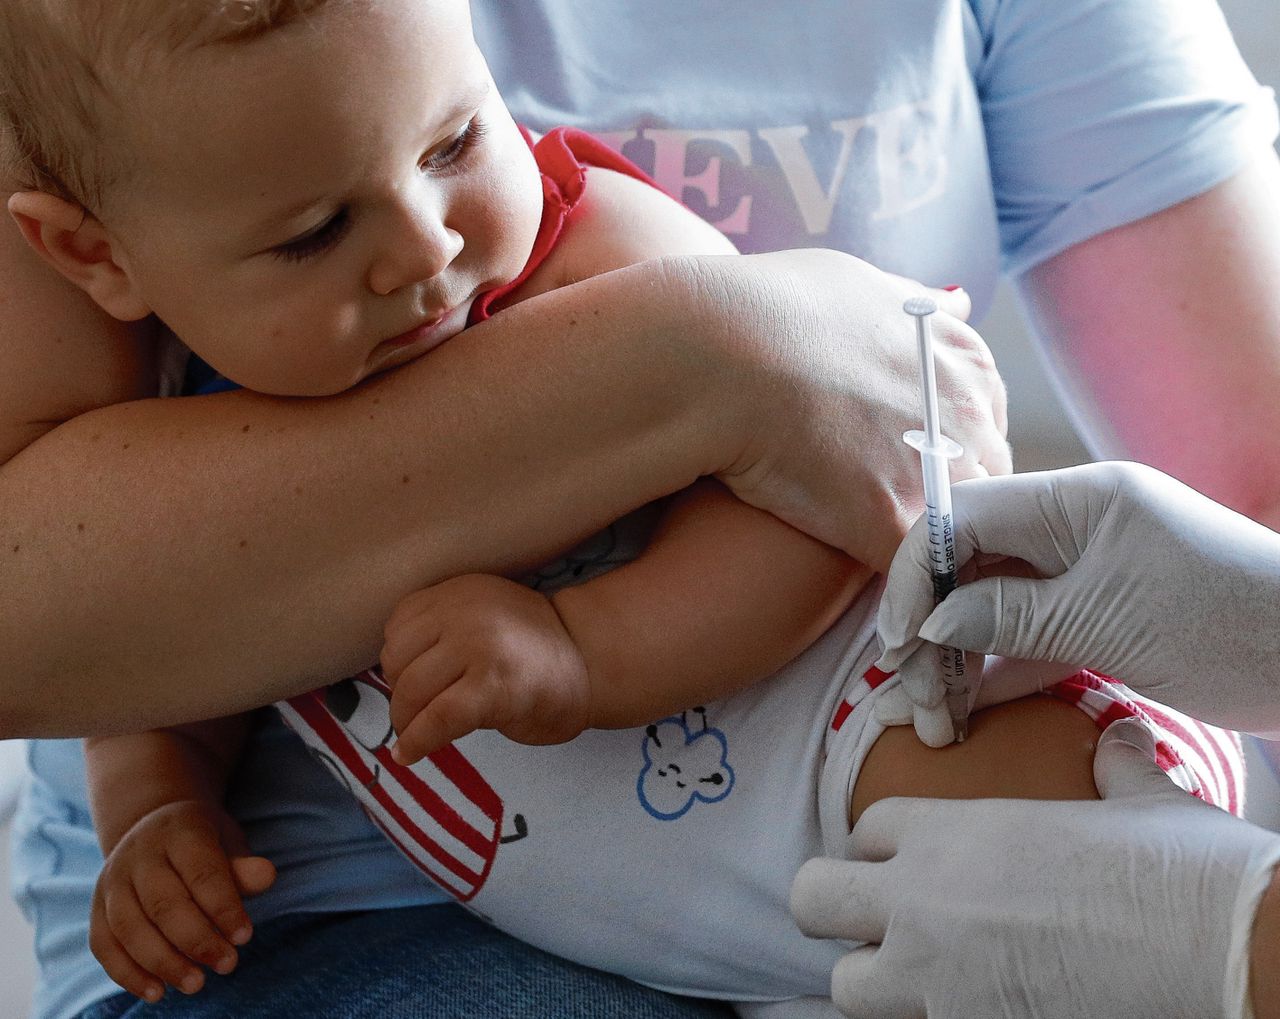 90,2 procent van de kinderen geboren in 2016 is volledig gevaccineerd, iets meer dan in 2018. Daarvoor is de vaccinatiegraad zes jaar op rij gedaald.